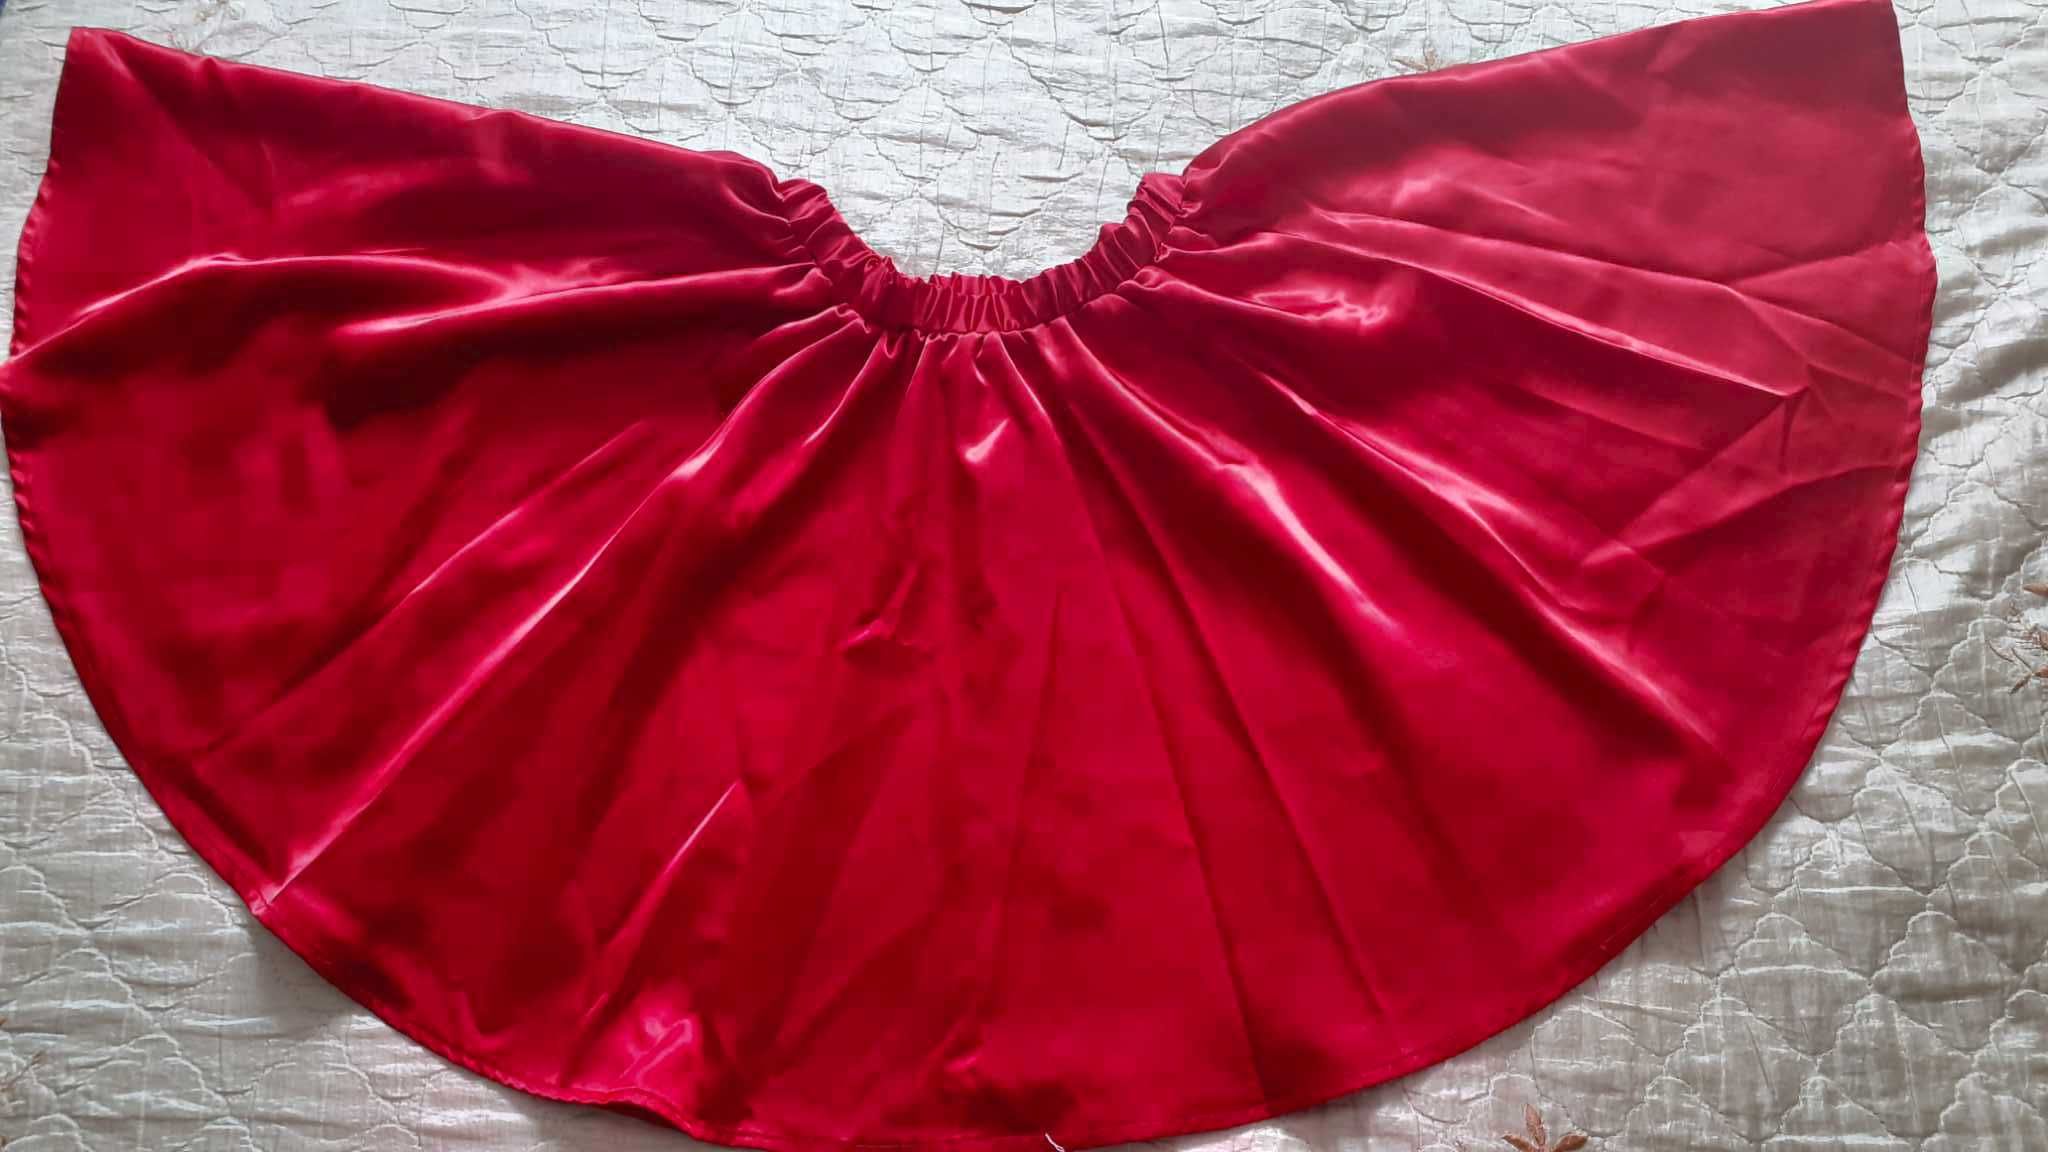 Spódnica czerwona, z koła, pas 29-35 cm (gumka), dł. 45 cm